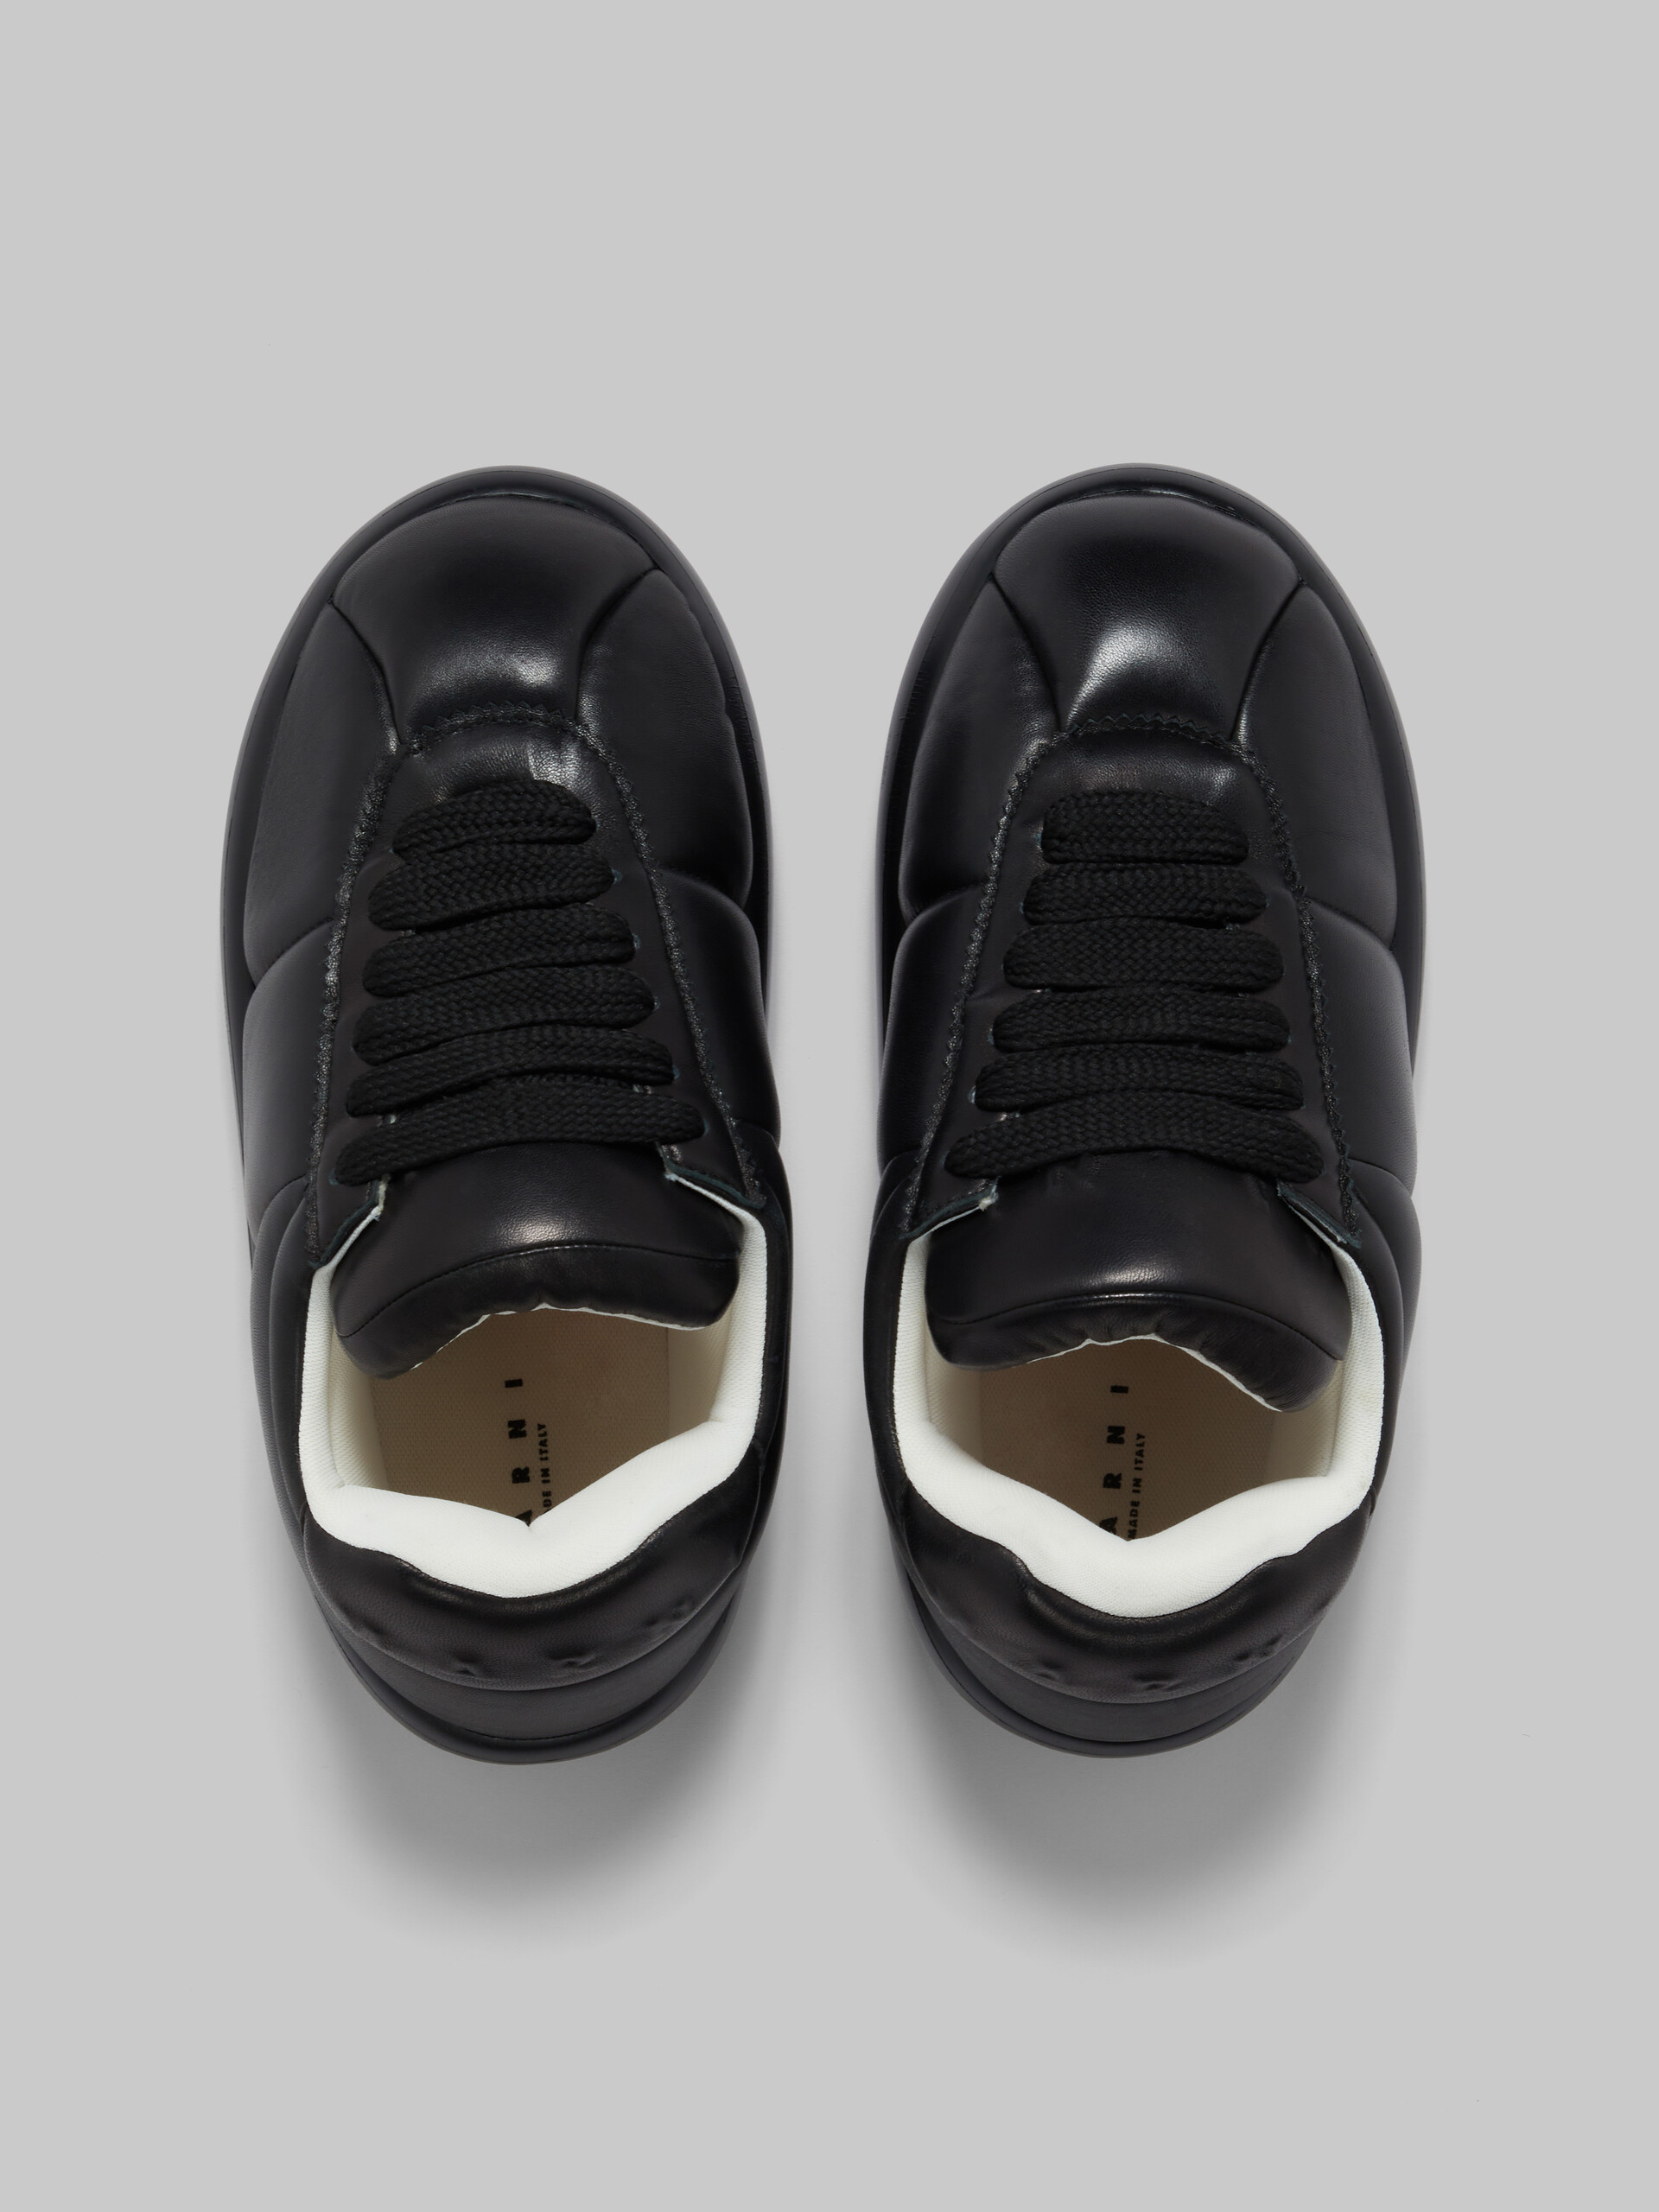 Sneakers BigFoot 2.0 en cuir noir - Sneakers - Image 4